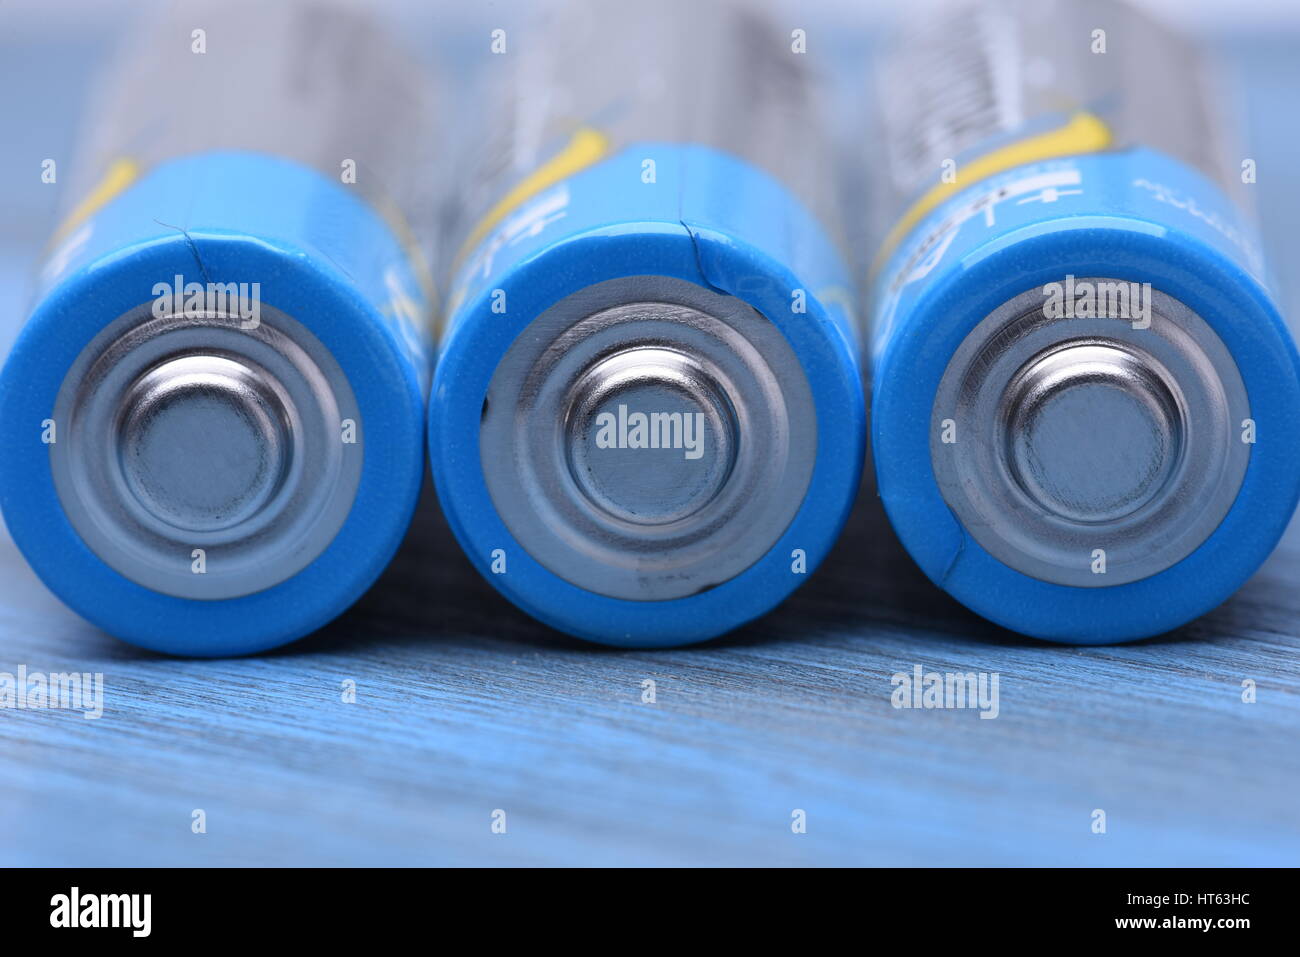 Groupe de piles alcalines AA utilisé dans de nombreux articles pour la maison, Close up on a blue metal mackground Banque D'Images